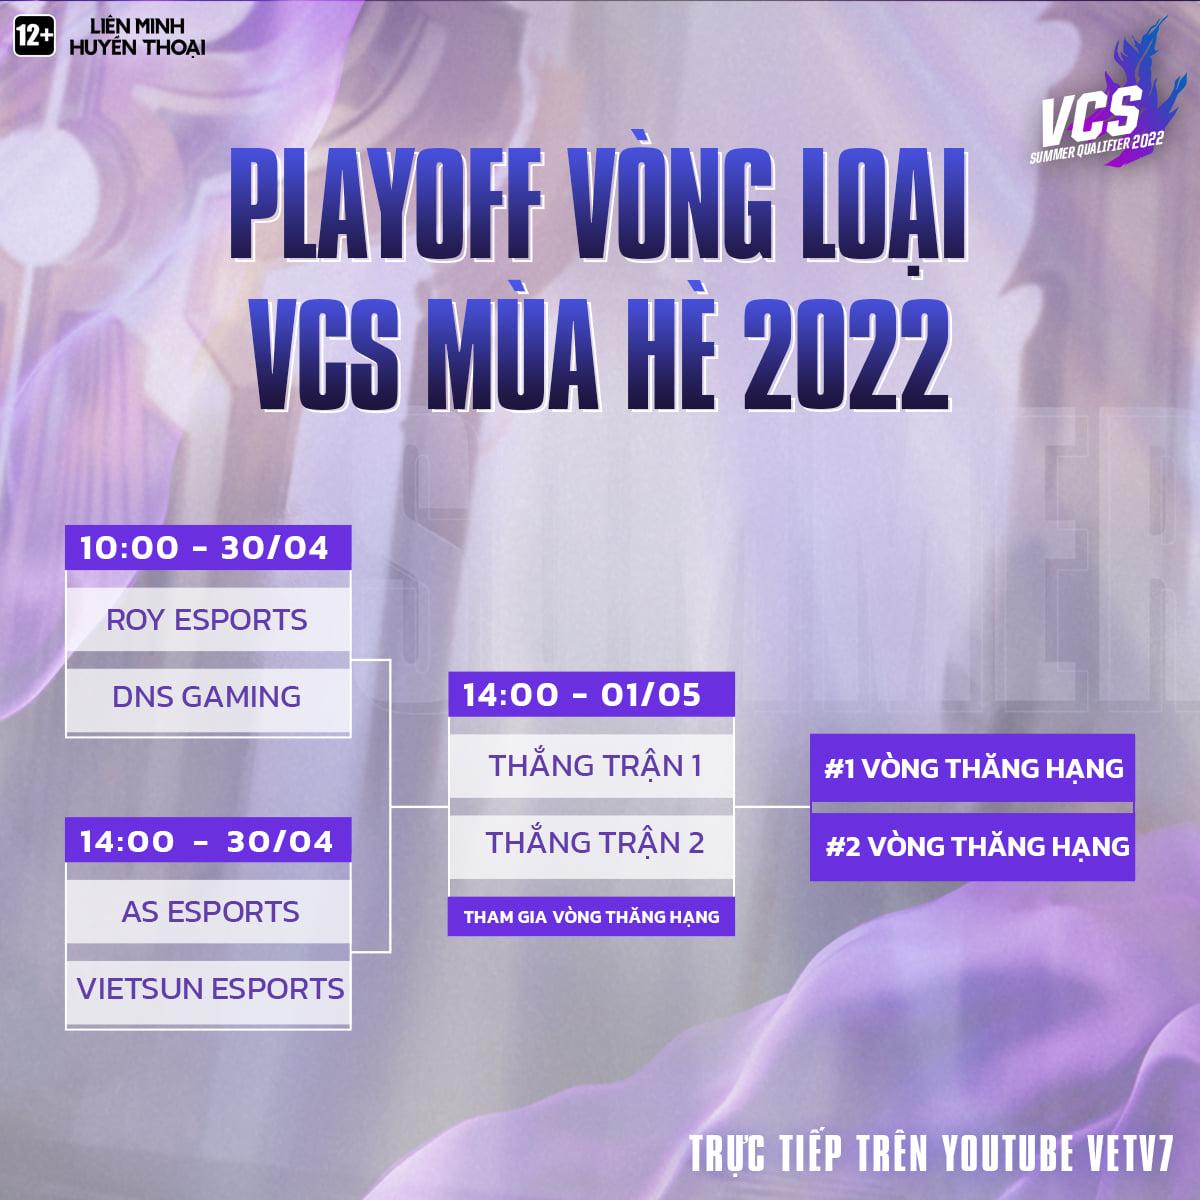 Đội tuyển thi đấu tại vòng loại VCS Mùa Hè 2022 nhận án phạt vì dàn xếp kết quả thi đấu